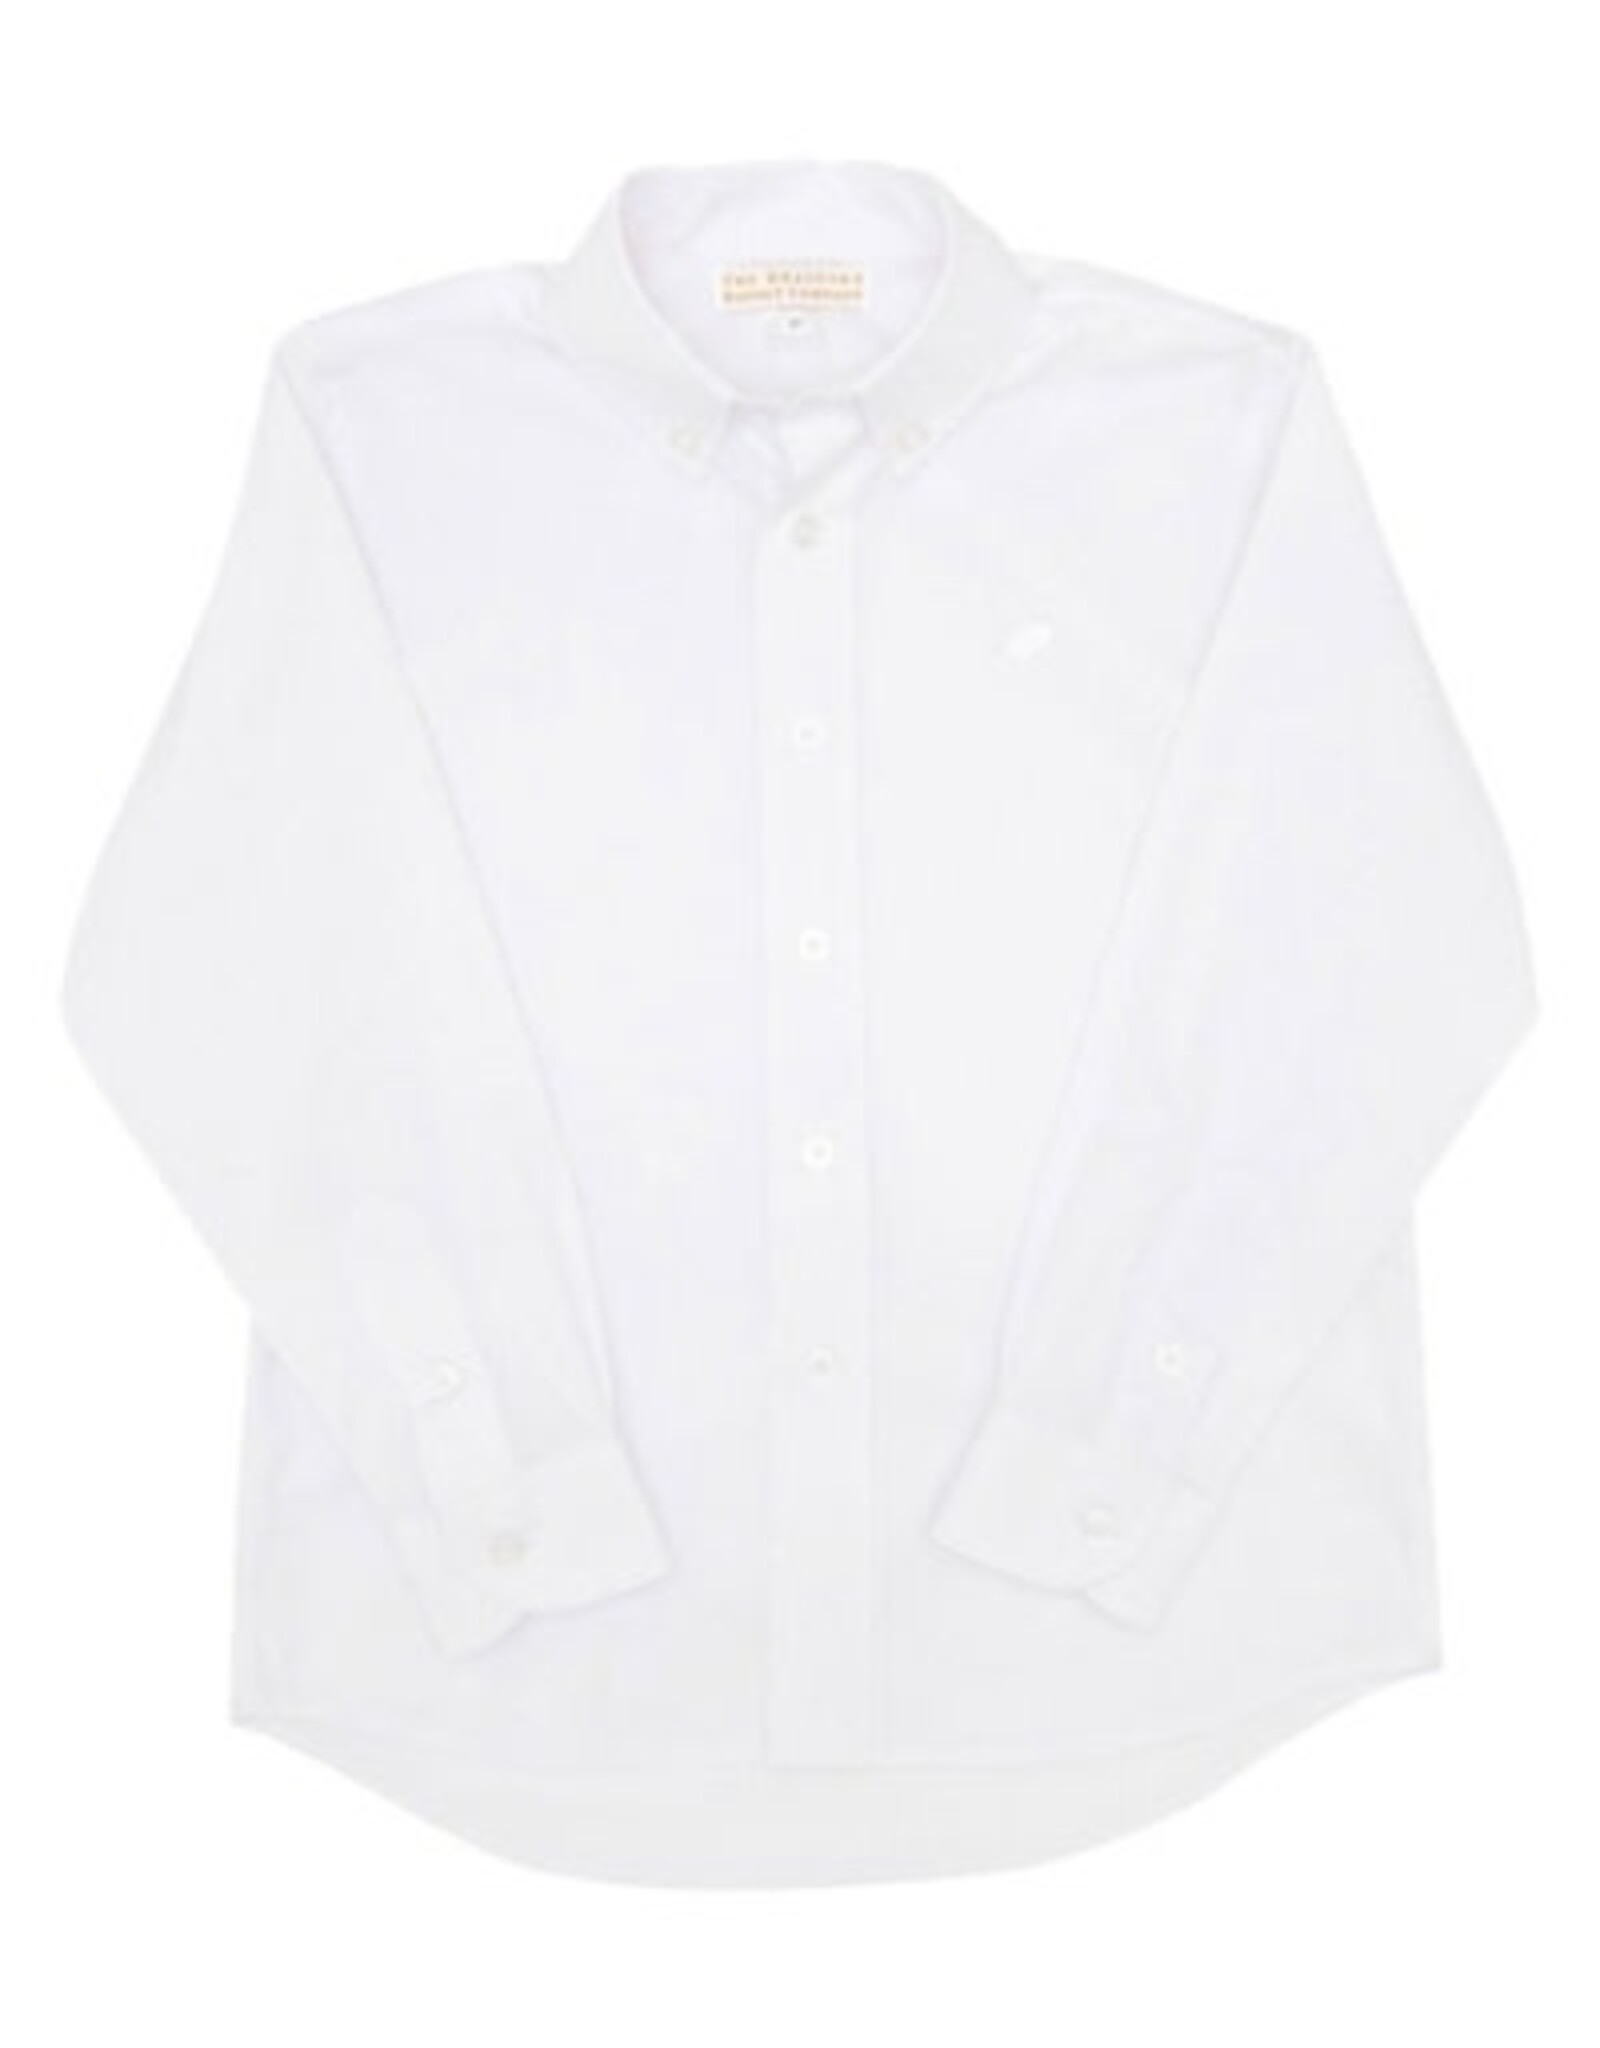 The Beaufort Bonnet Company Deans List Dress Shirt, Worth Avenue White